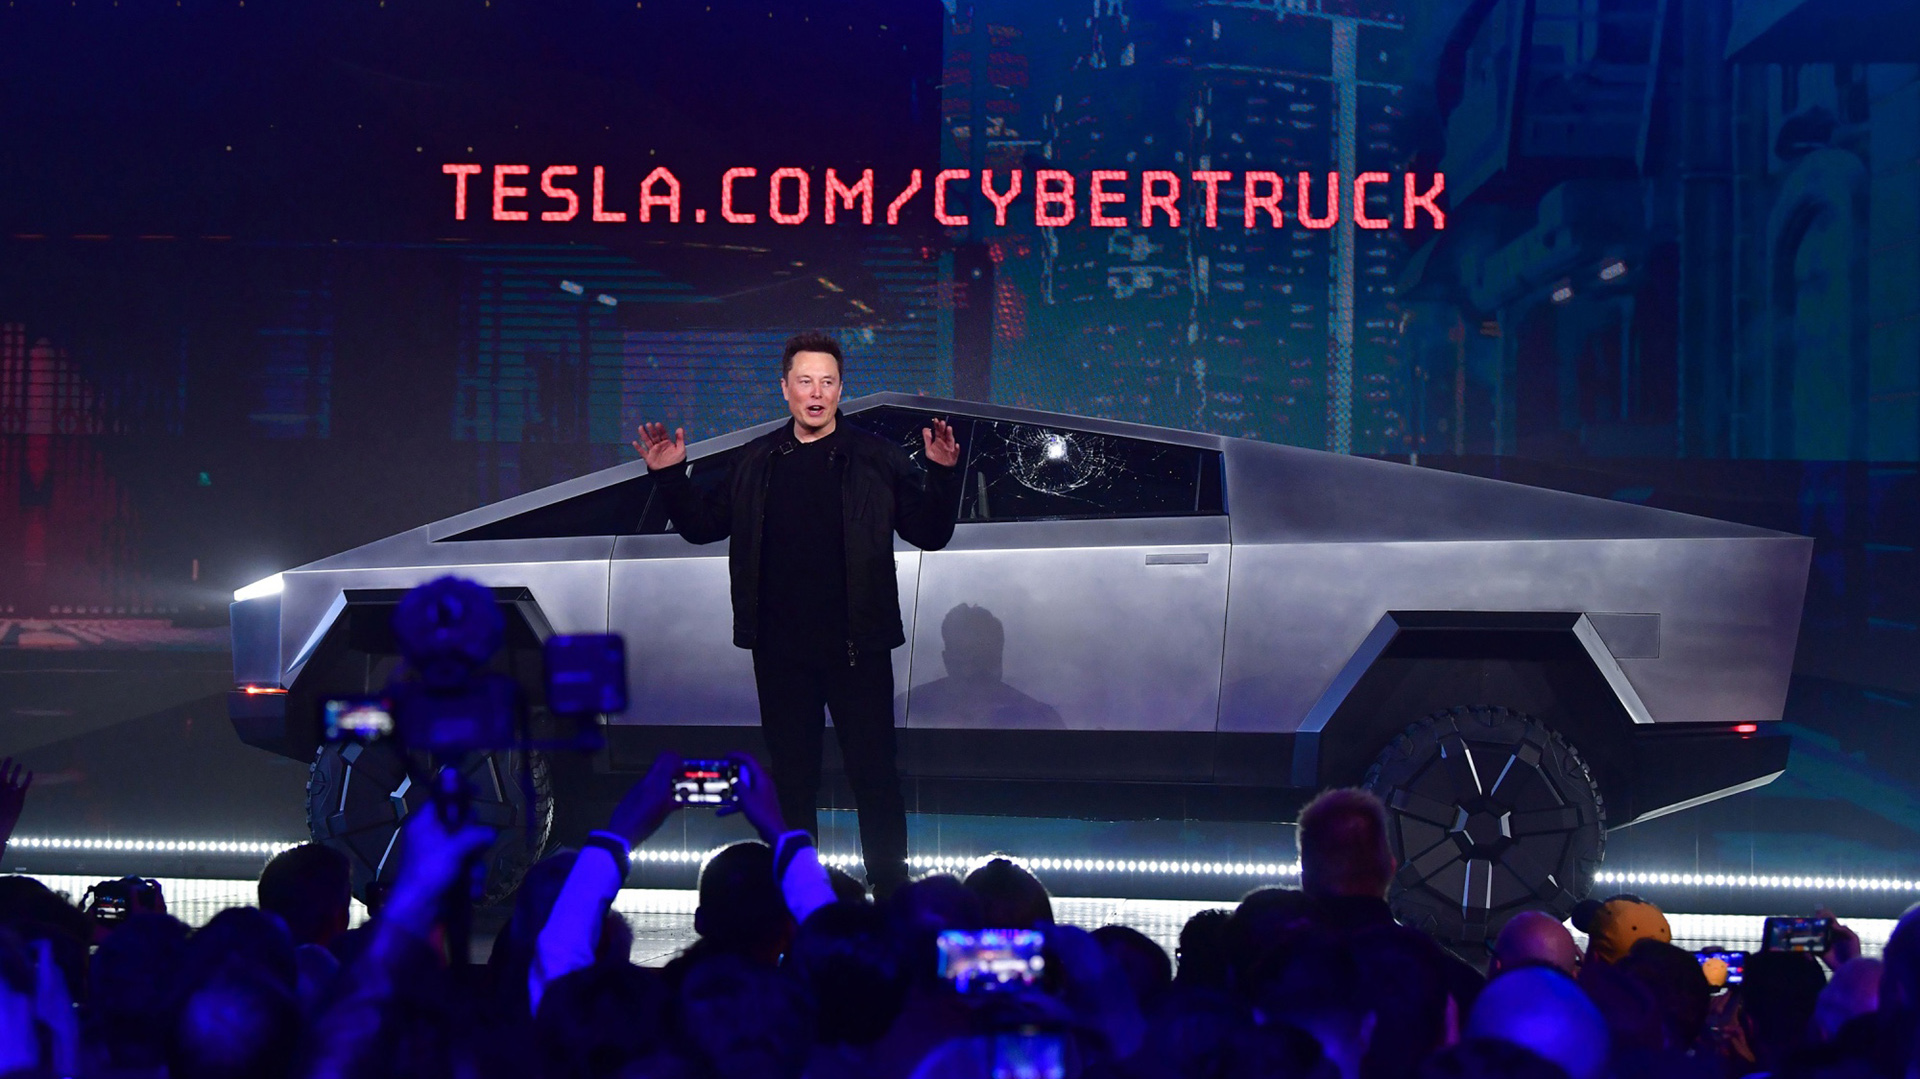 Precio inicial del Cybertruck de Tesla pasará de 39.900 dólares en 2019 a una cifra aún no anunciada por la compañía.